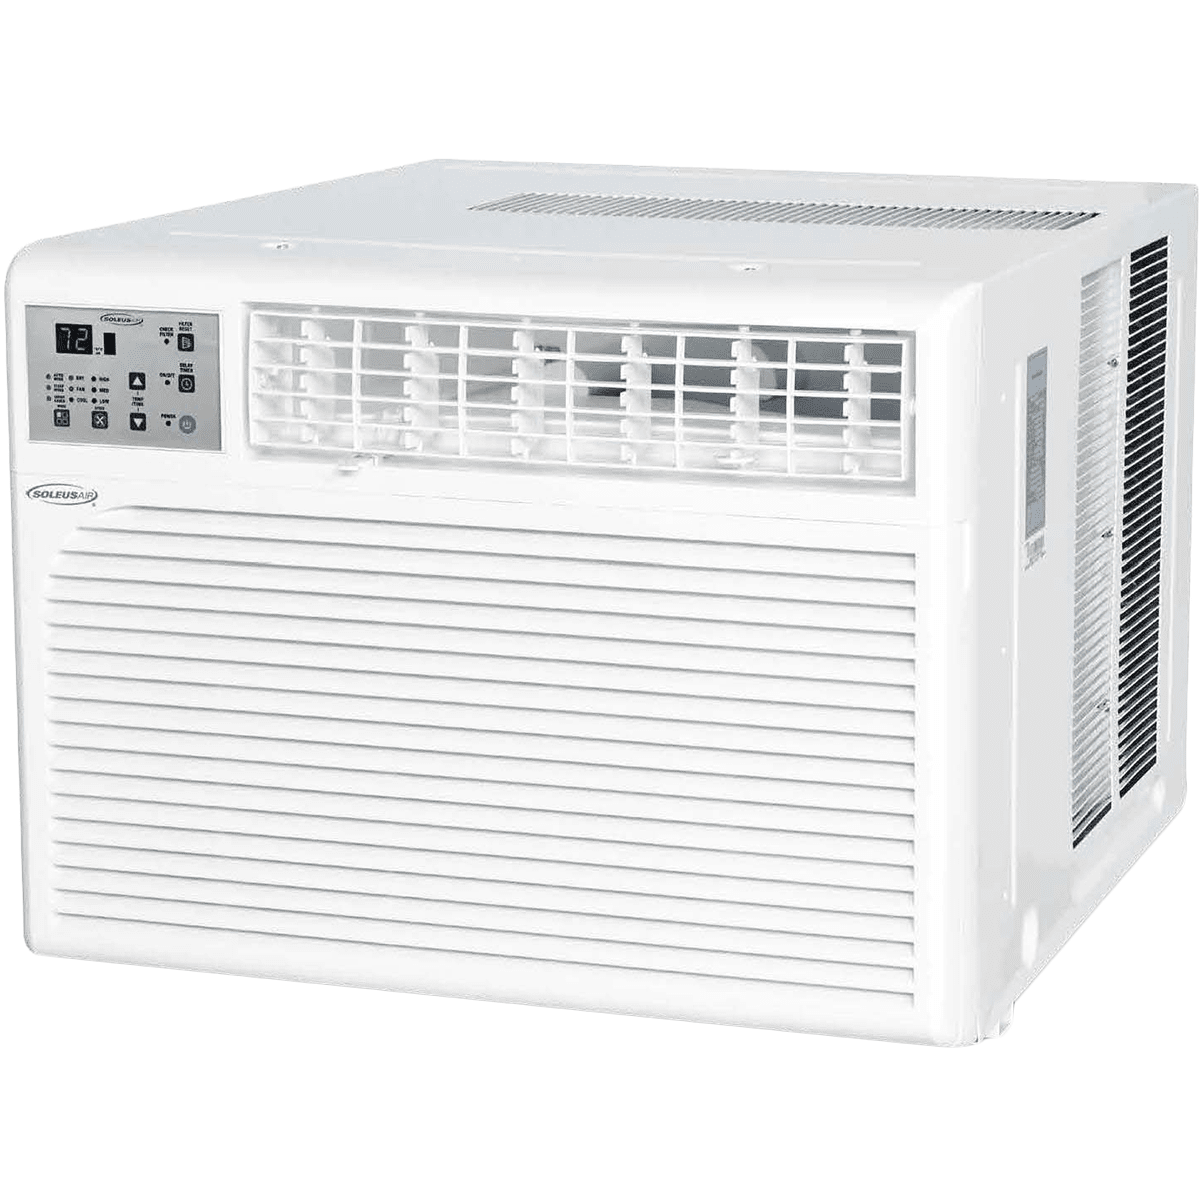 Soleus Air 18,300 Btu Window Air Conditioner (ws-18e-01)